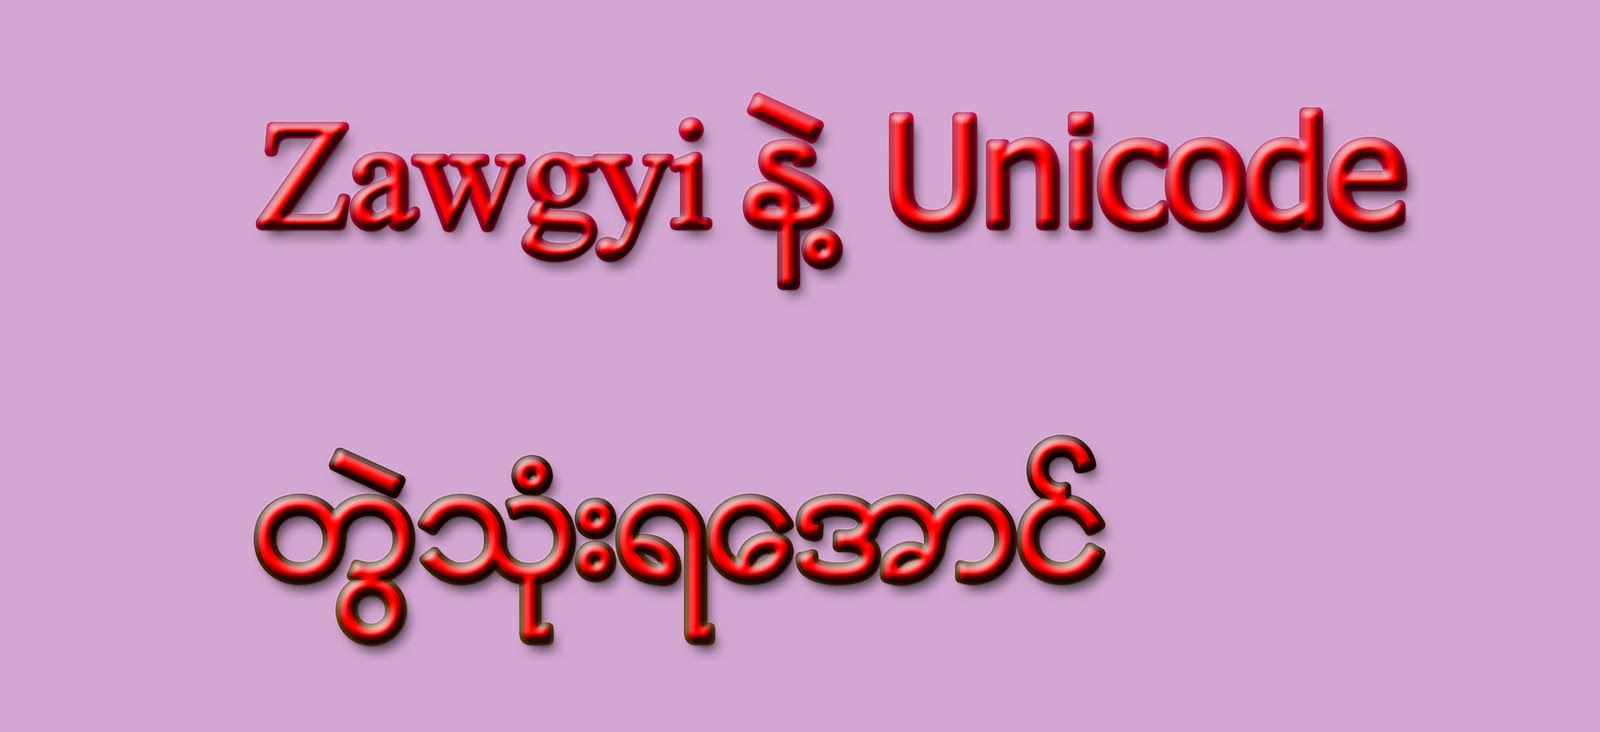 zawgyi unicode 64